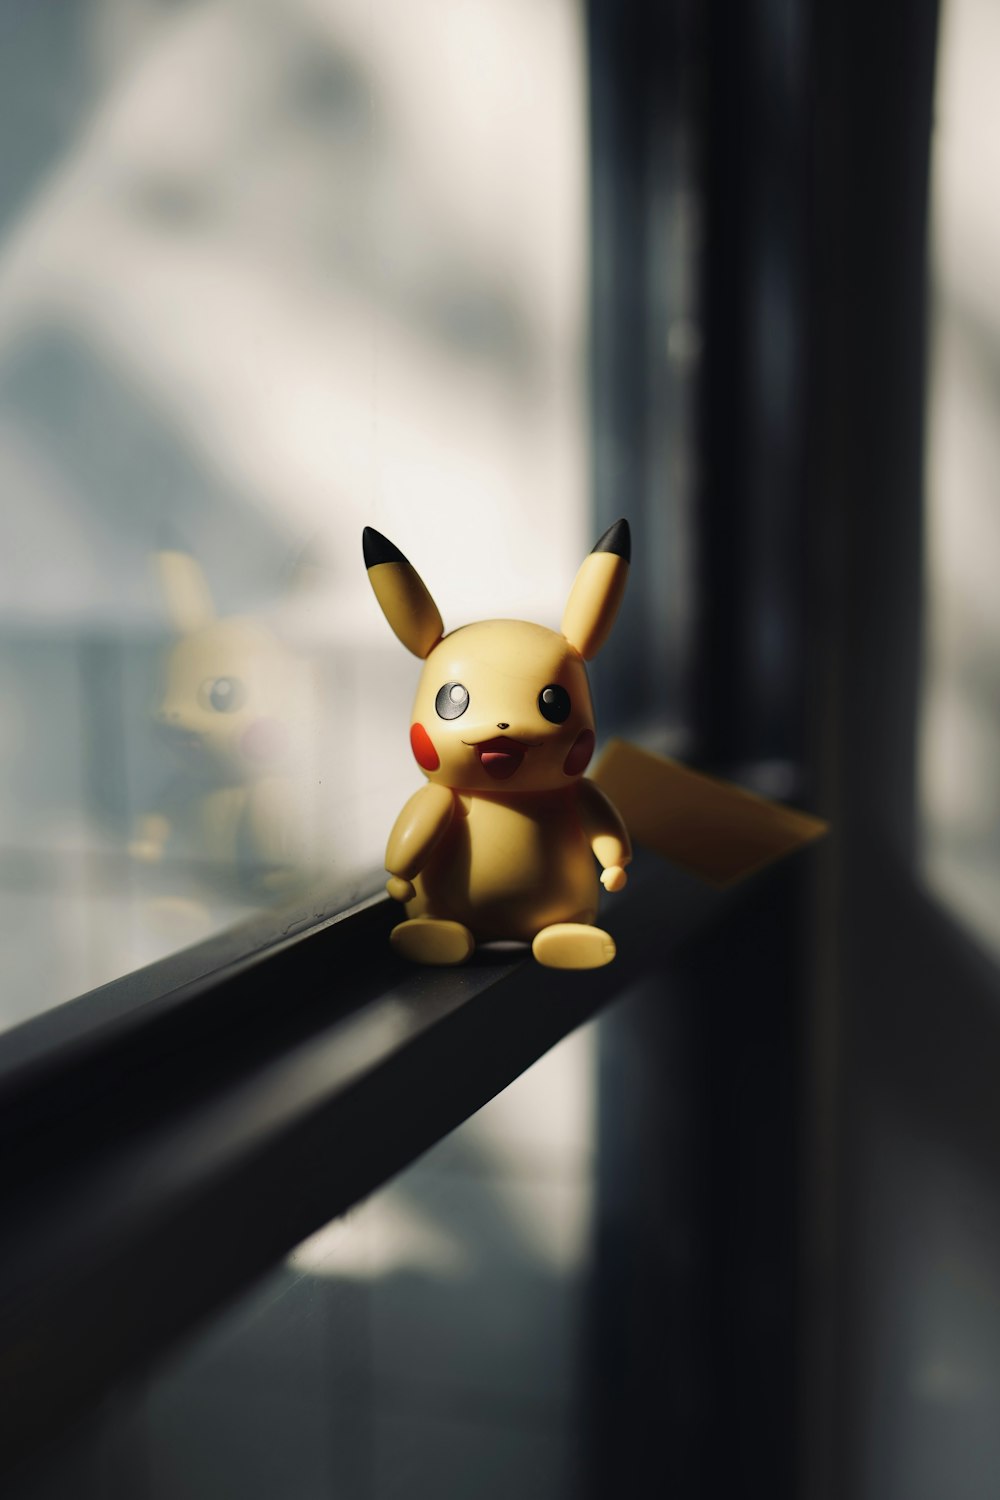 Ein Spielzeug-Pikachu sitzt auf einer Fensterbank